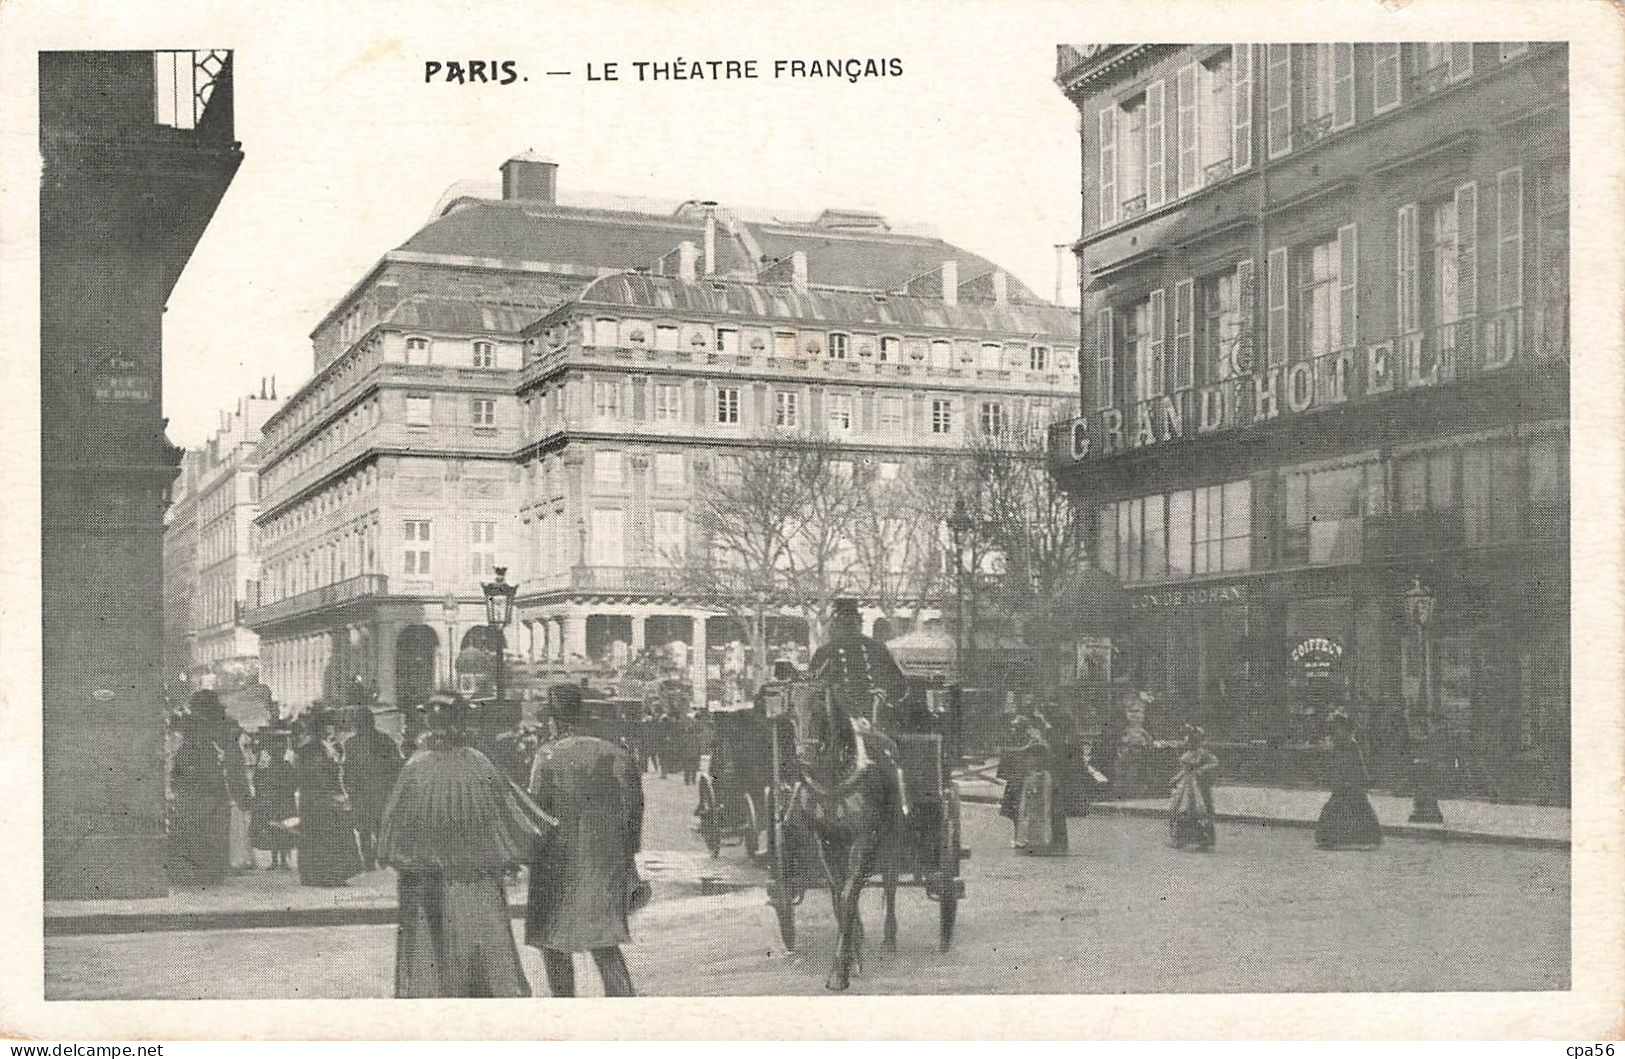 une série de 18 cartes 1900 - cartes précurseurs PARIS